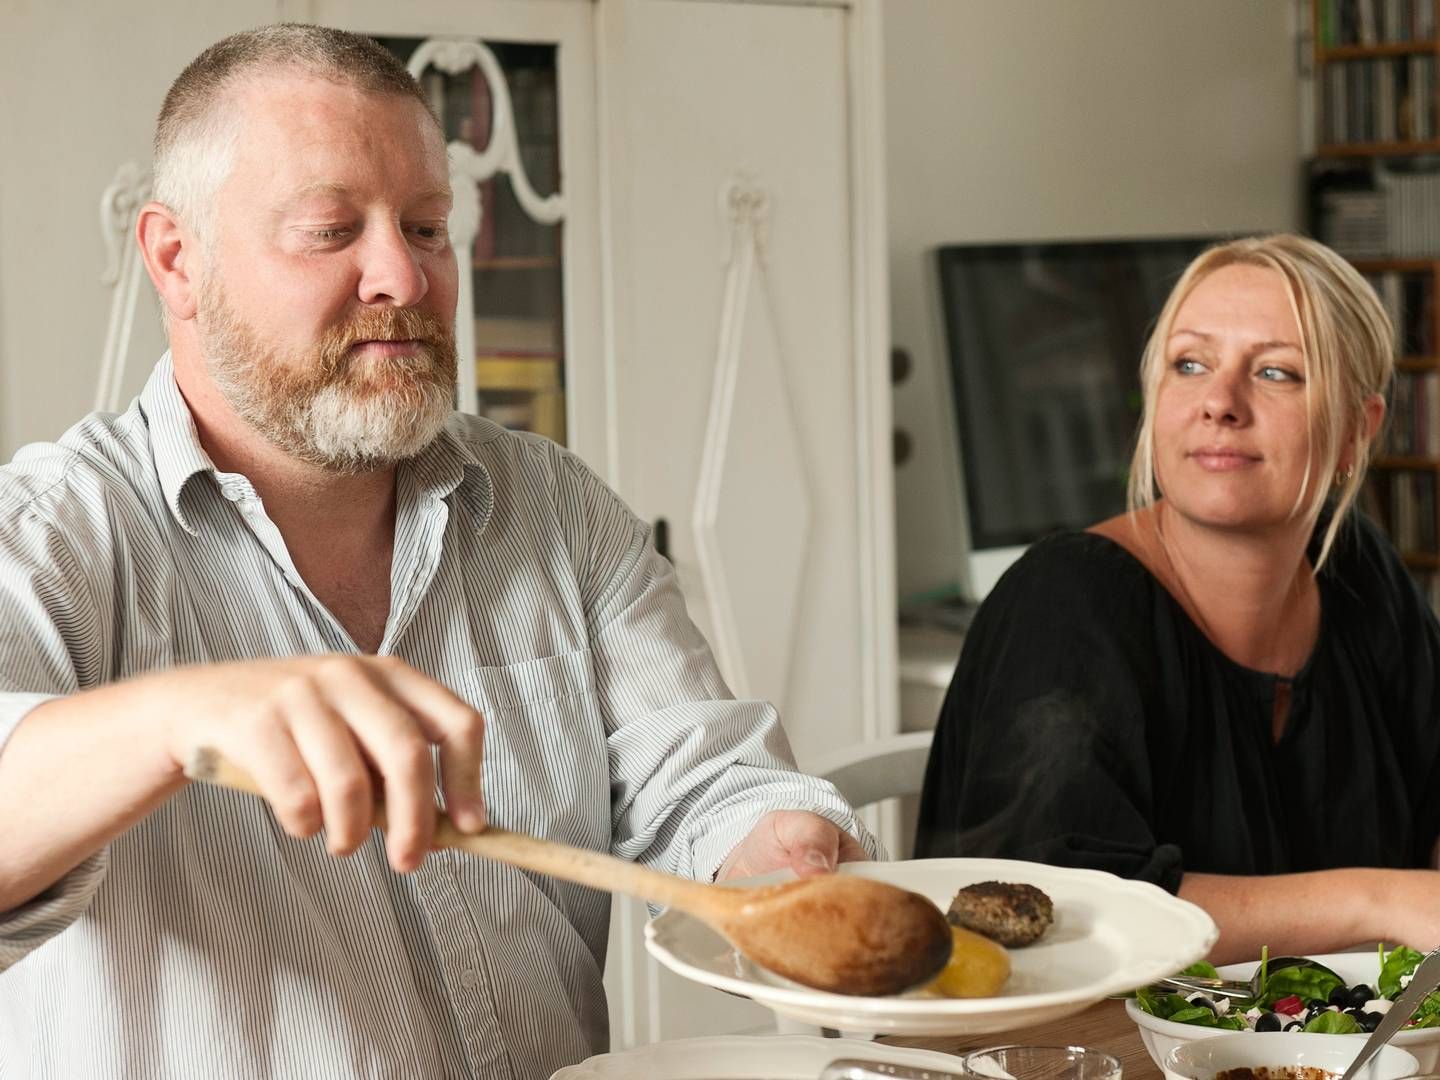 Kokken & Jomfruen leverer aftensmad til børnefamilier fire gange om ugen gennem konceptet Kokkens Hverdagsmad. | Foto: Søren Skarby/Polfoto/Arkiv